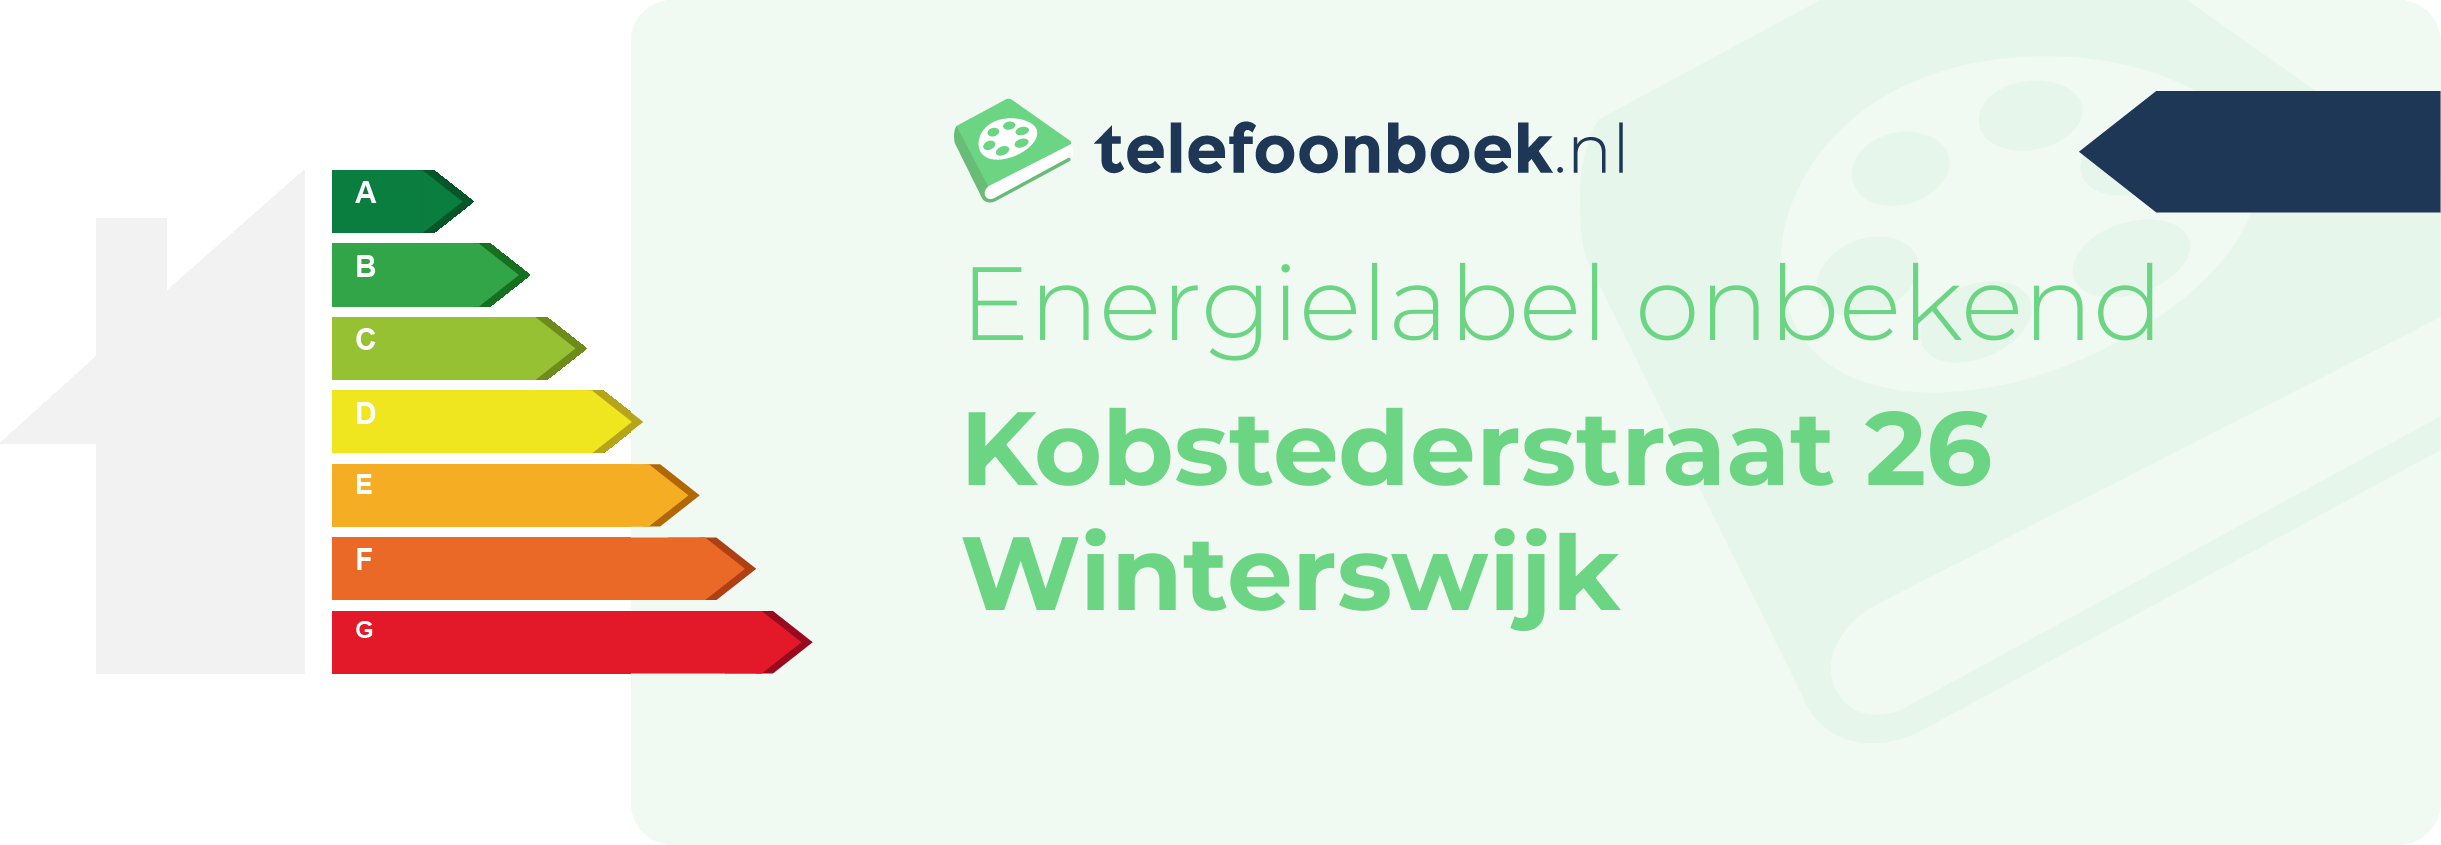 Energielabel Kobstederstraat 26 Winterswijk